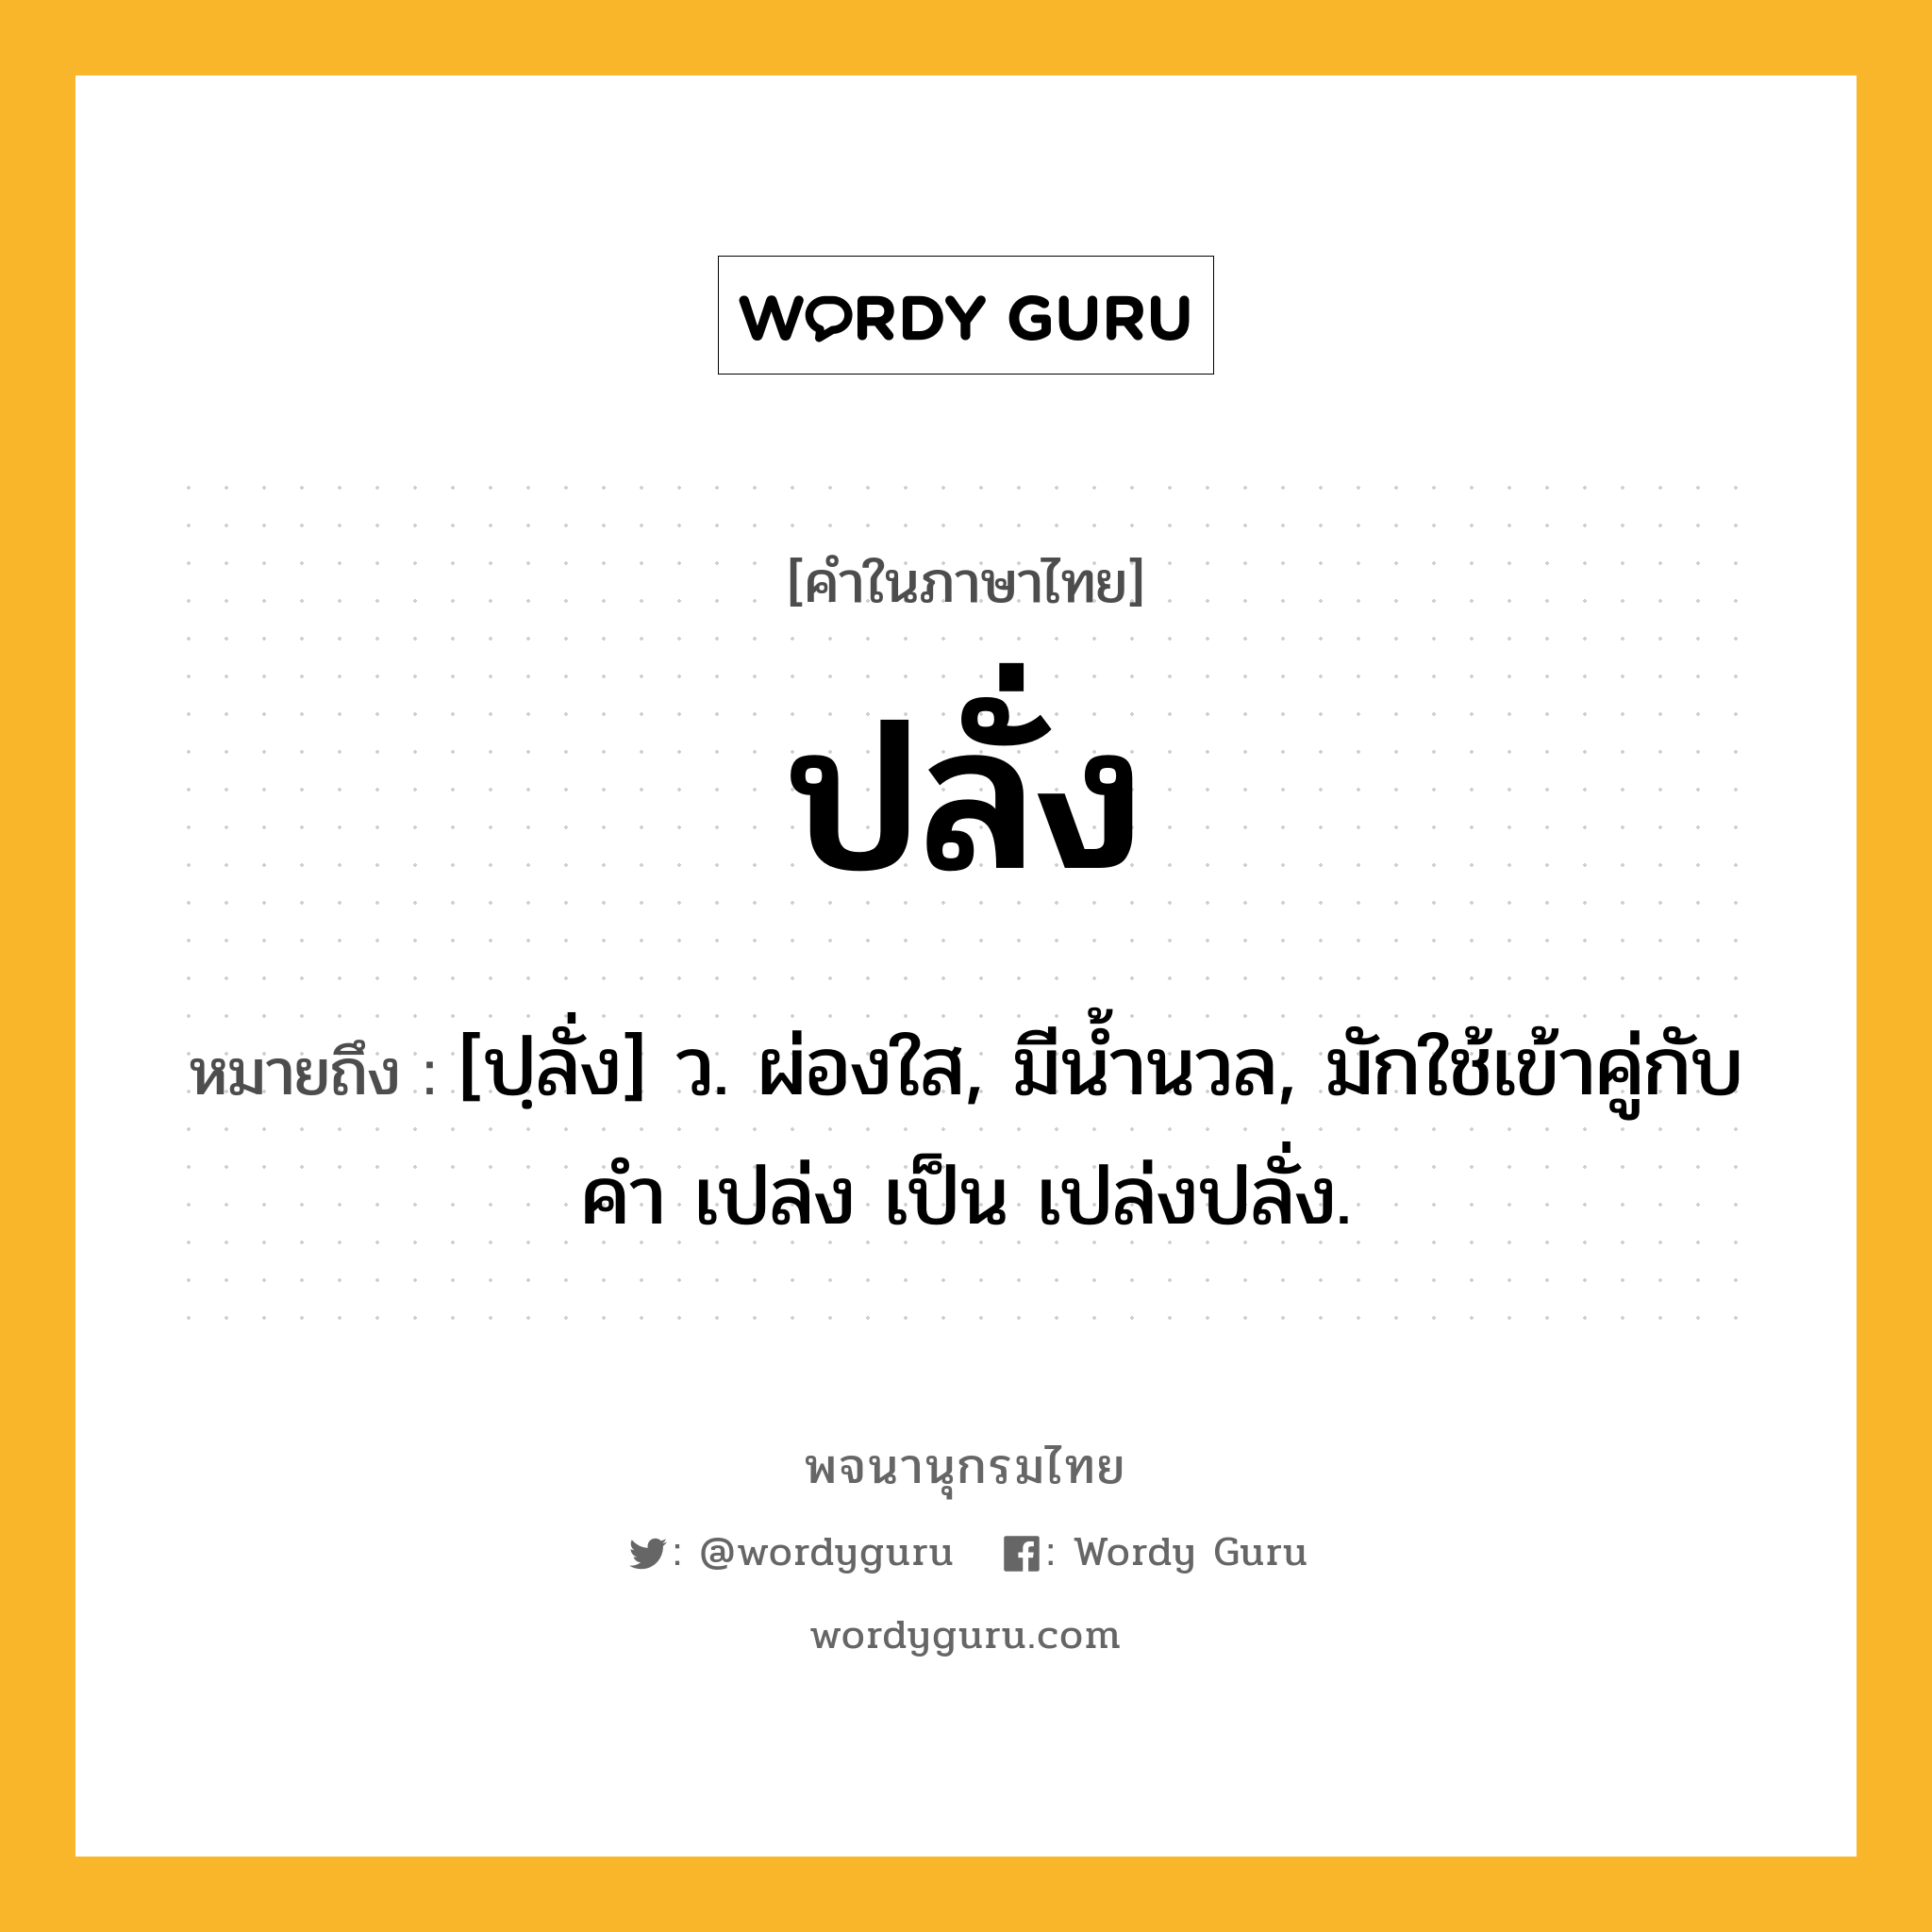 ปลั่ง ความหมาย หมายถึงอะไร?, คำในภาษาไทย ปลั่ง หมายถึง [ปฺลั่ง] ว. ผ่องใส, มีนํ้านวล, มักใช้เข้าคู่กับคำ เปล่ง เป็น เปล่งปลั่ง.